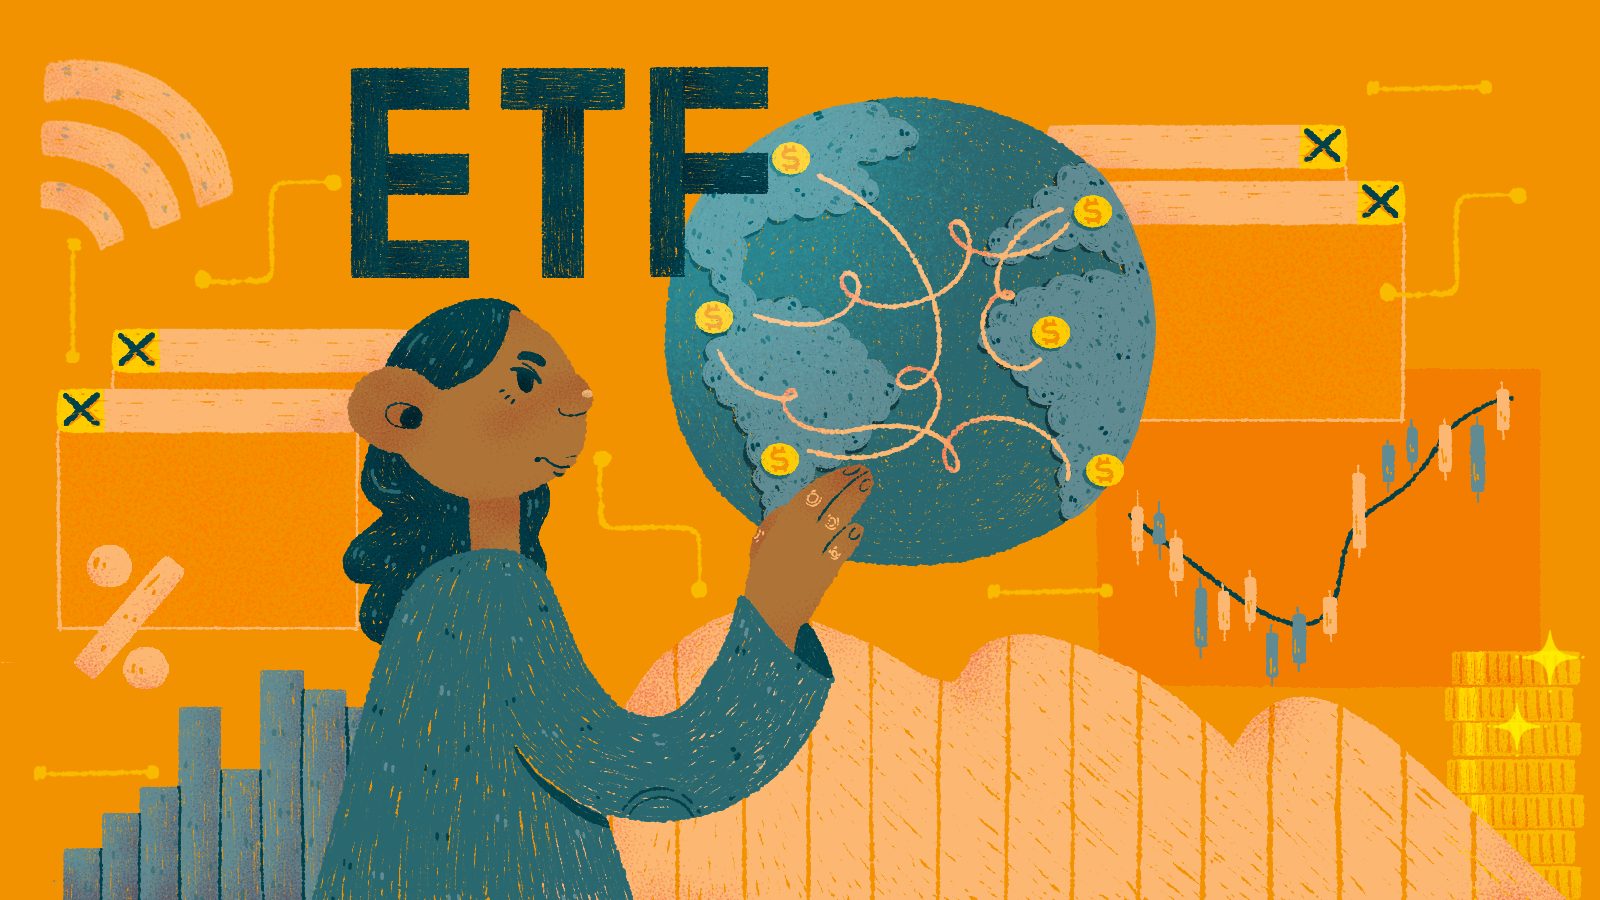 Ilustração abstrata sobre ETF, sigla em inglês para fundo negociado em Bolsa (Exchange Traded Fund).